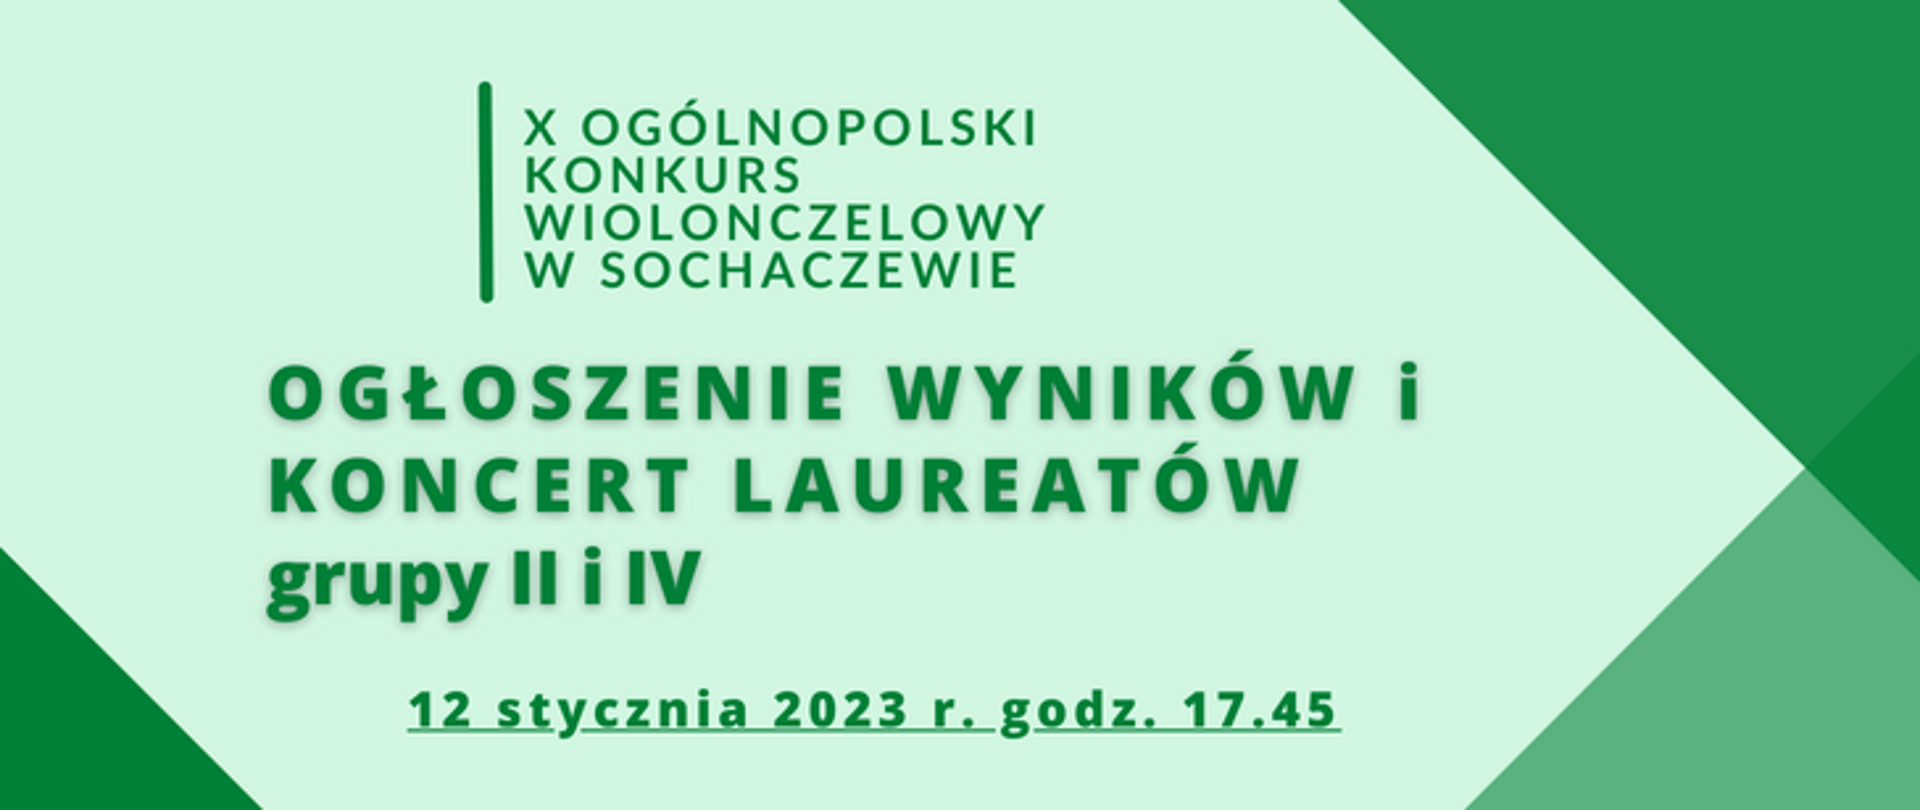 Na jasno zielonym tle zielone napisy X Ogólnopolski Konkurs Wiolonczelowy w Sochaczewie. Pod spodem napis Ogłoszenie wyników grupa II i IV i data 12 stycznia 2023 r. godz. 17.45. Na prawym dolnym i górnym rogu oraz lewym dolnym rogu znajdują się zielone trójkąty